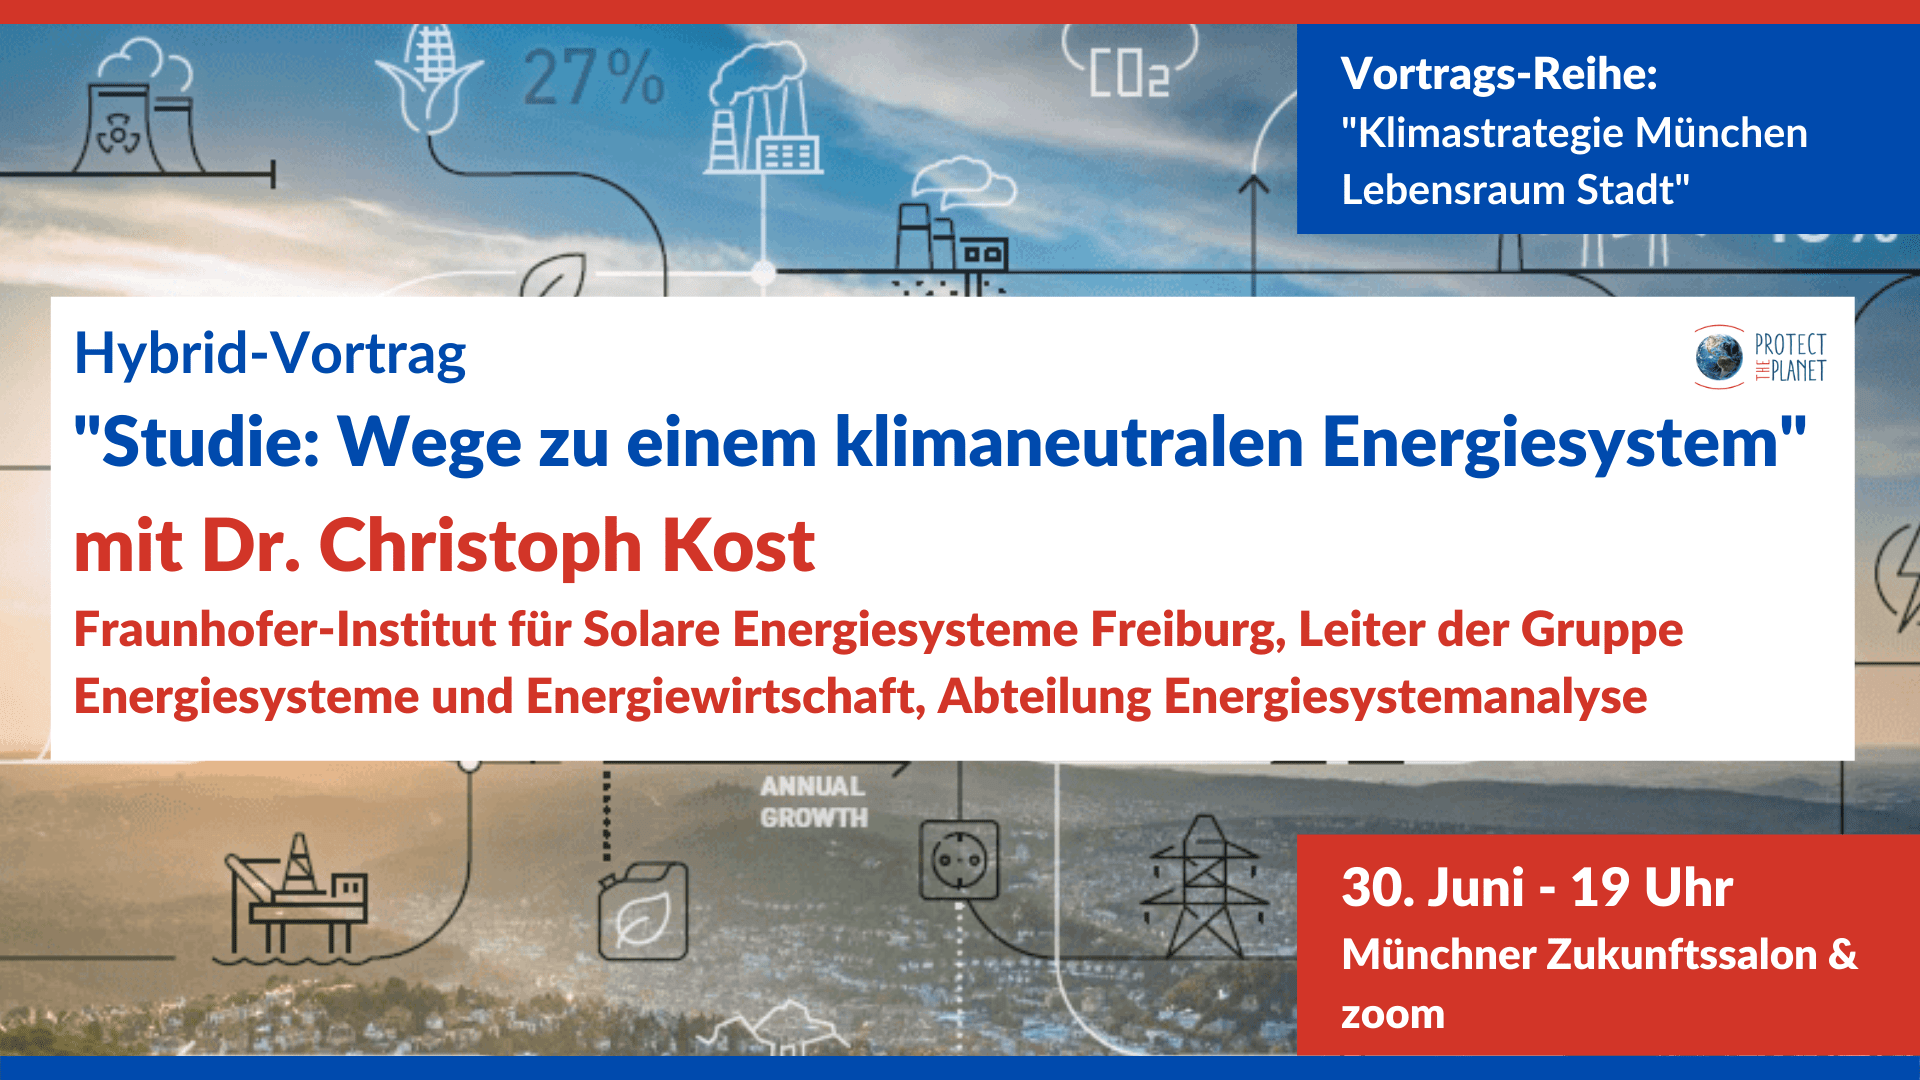 22/06/30 Vortrag Studie: Wege zu einem klimaneutralen Energiesystem